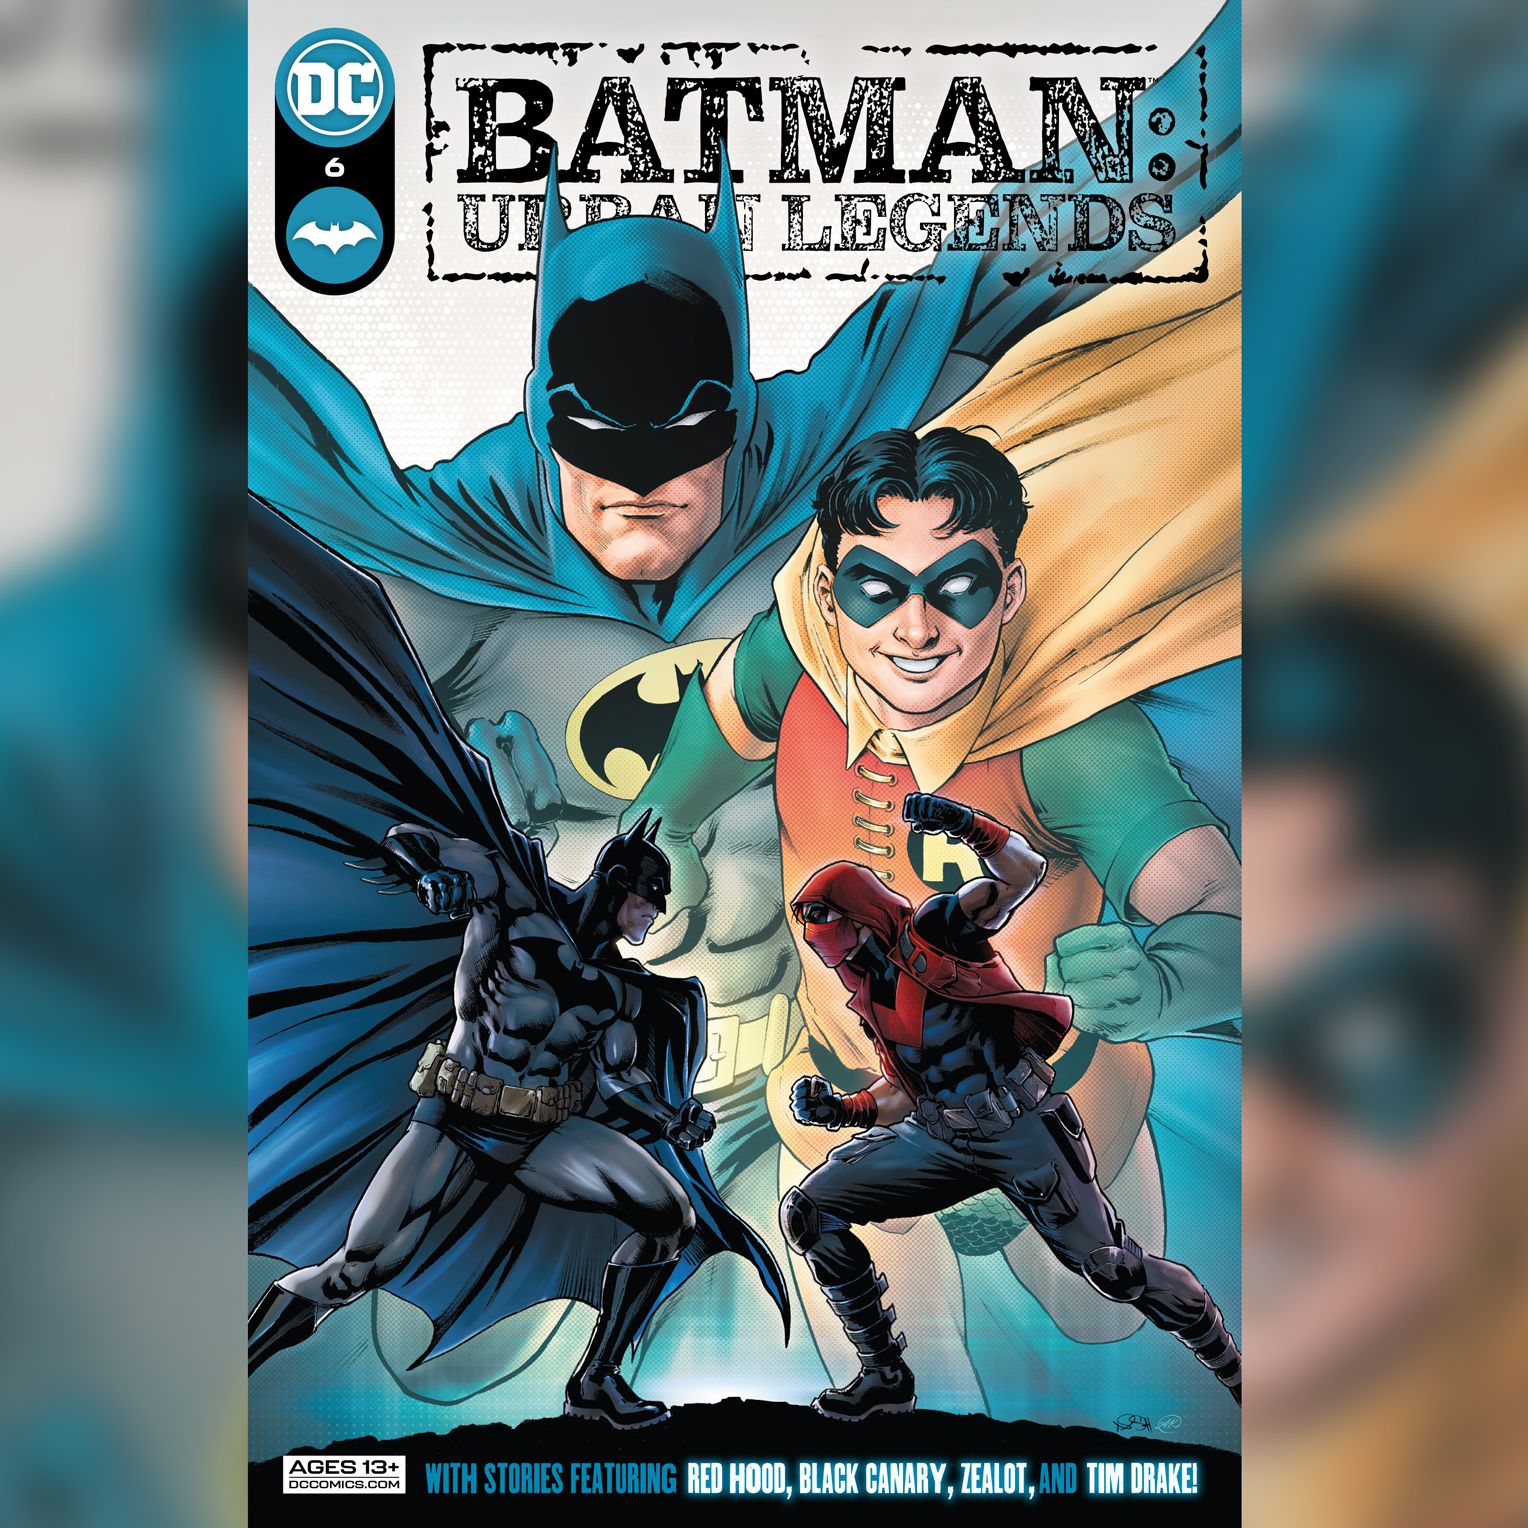 A new 'Batman' comic confirms that sidekick Robin is queer | CNN